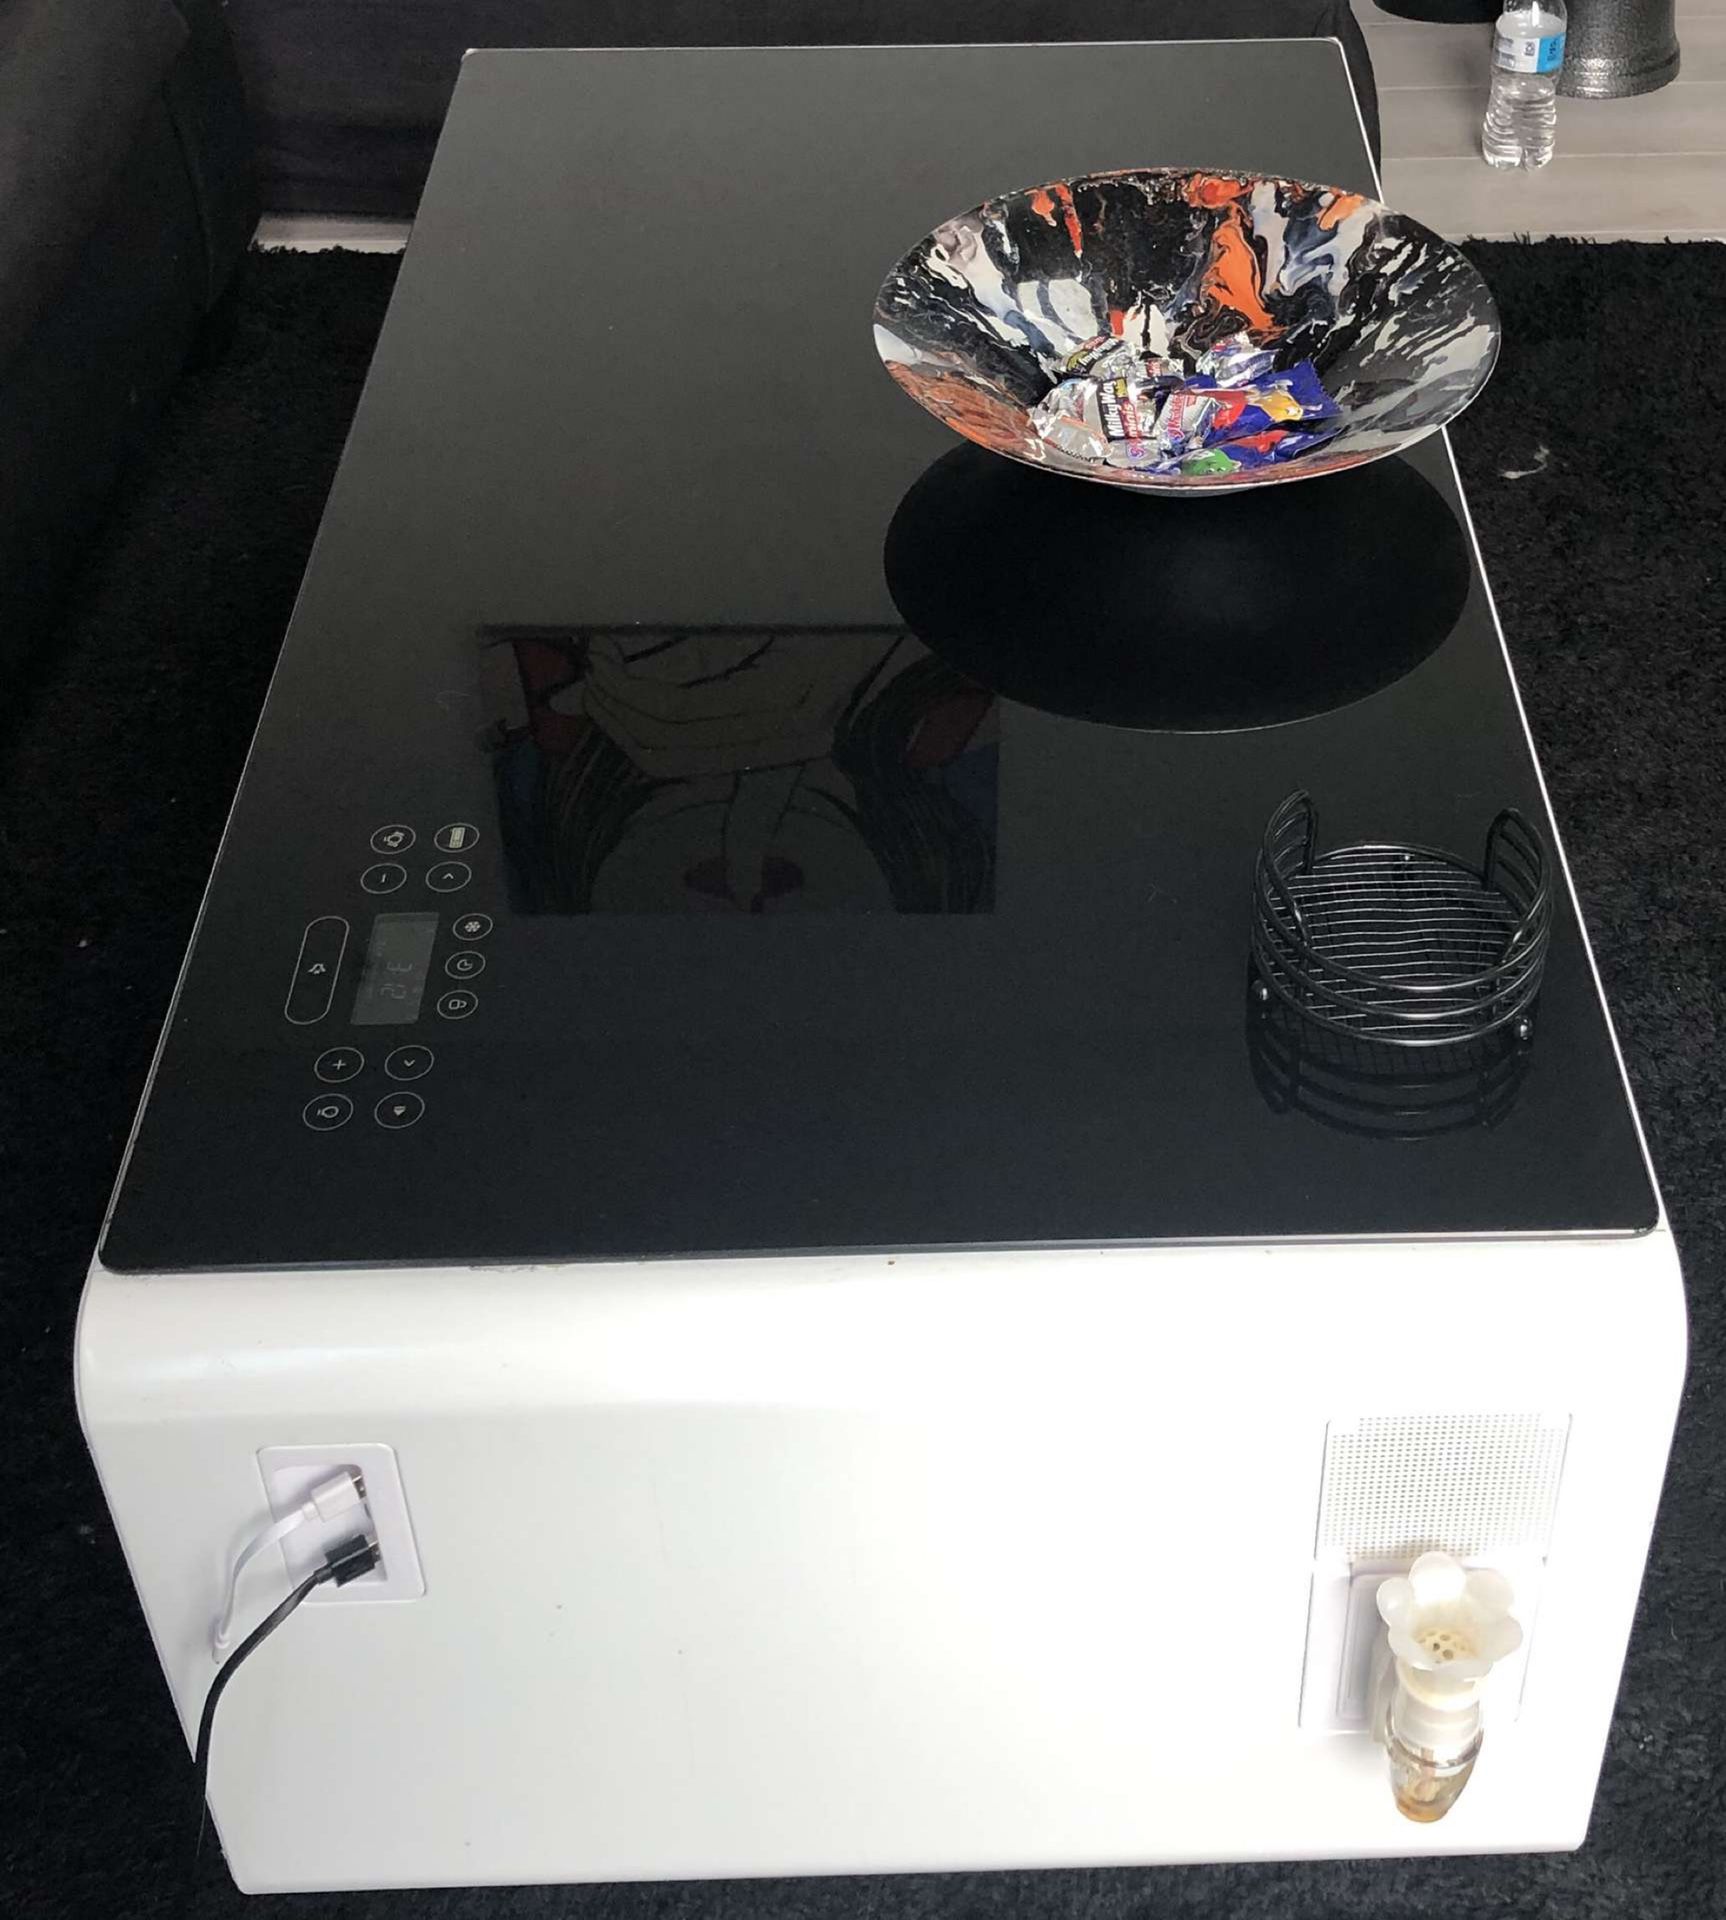 Sobro smart table with fridge